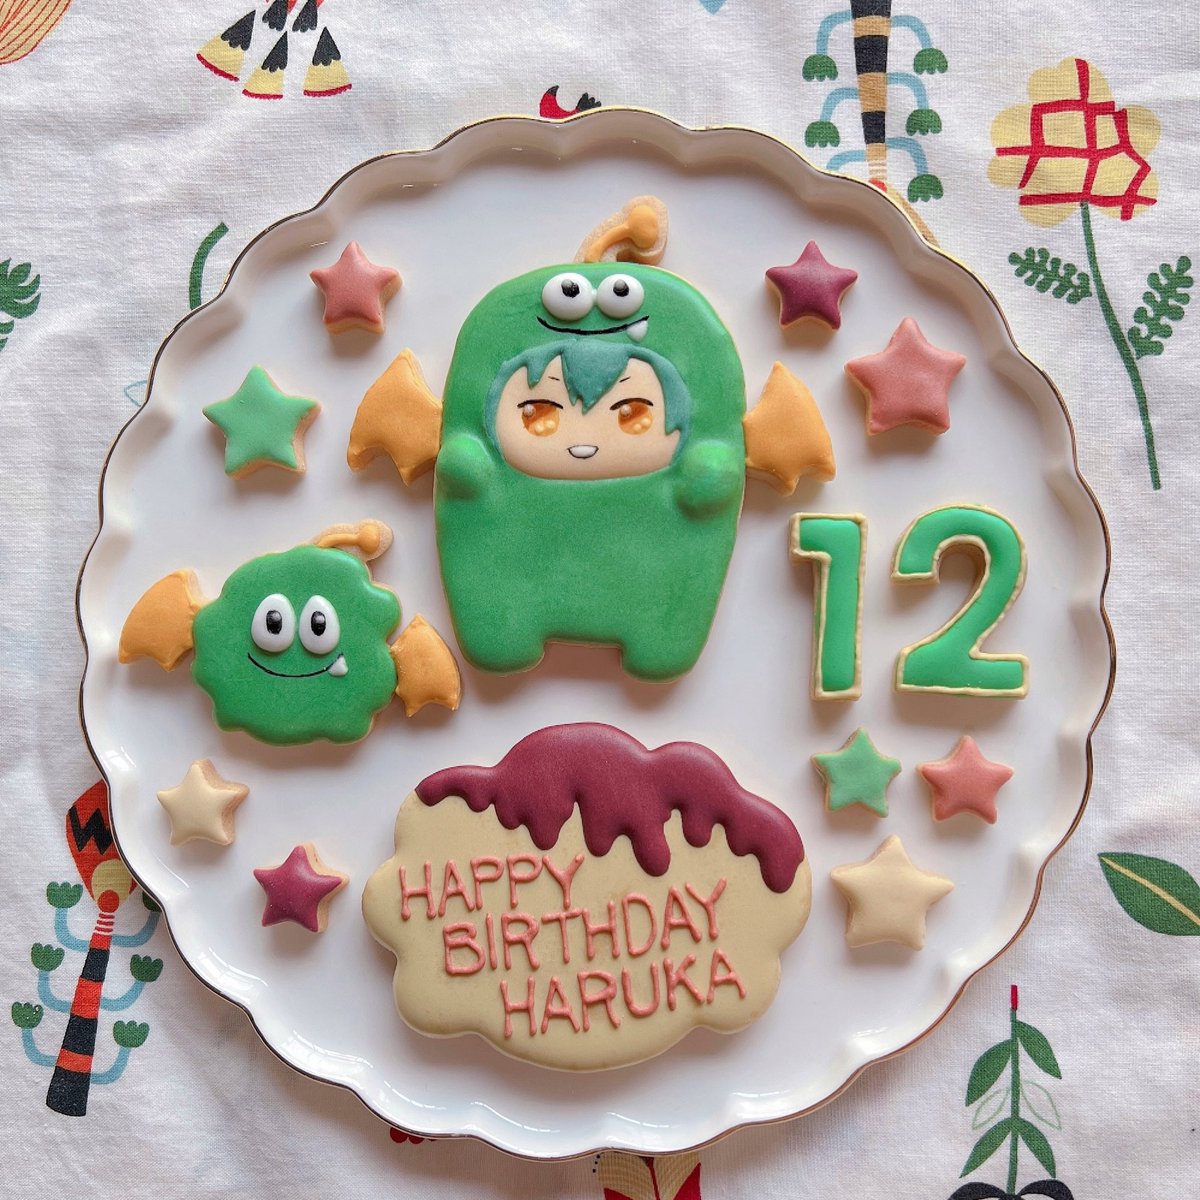 モンはるちゃんのアイシングクッキー作りました🍪お誕生日おめでとう🥳#亥清悠誕生祭2021 #亥清悠生誕祭2021 